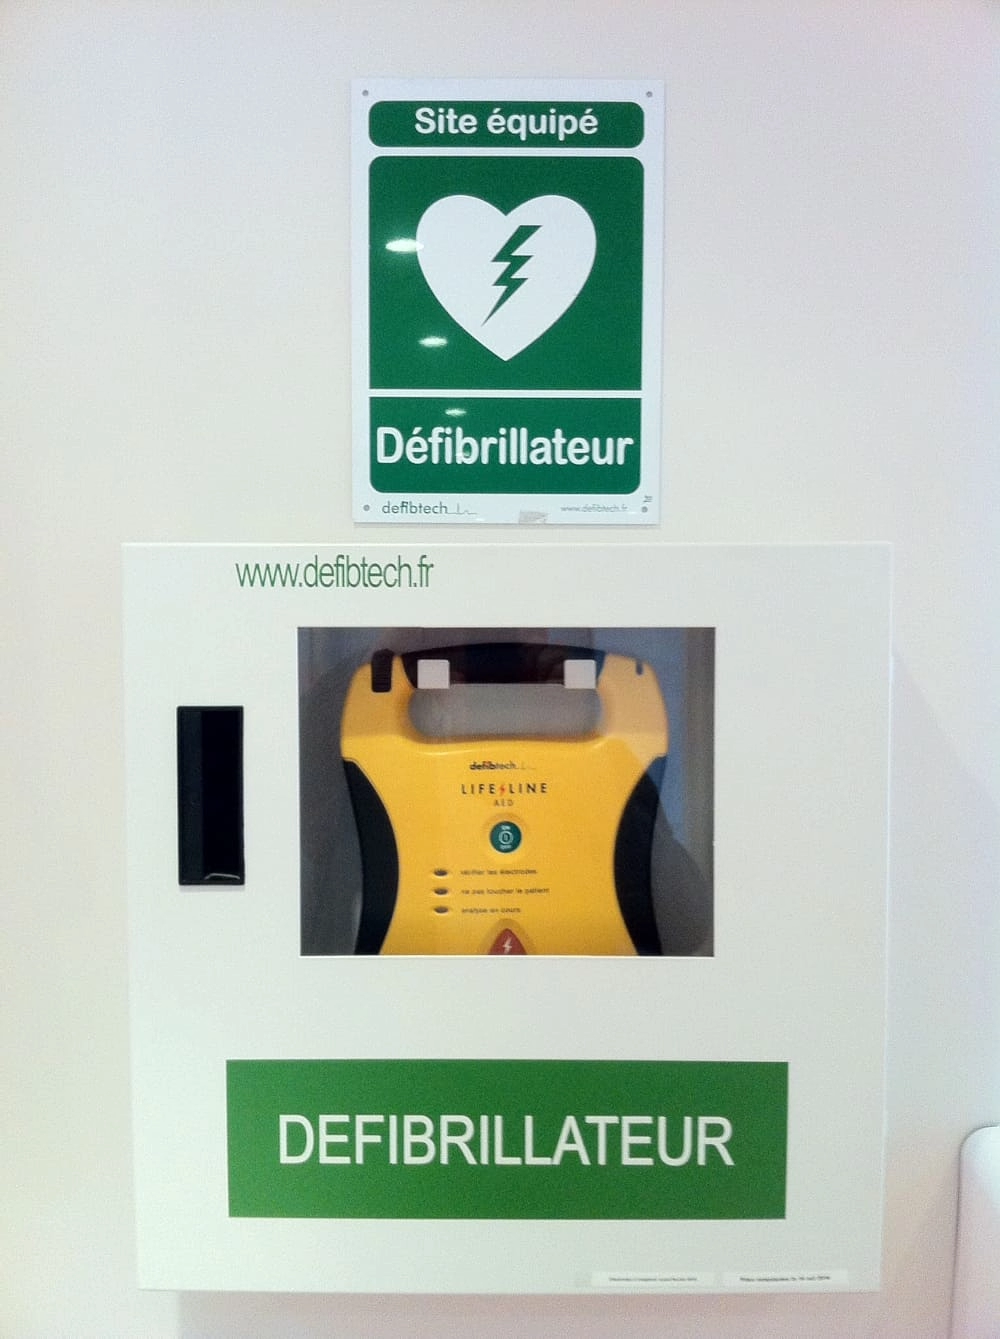 Formation à destination de tous les salariés, pour s’initier à l’utilisation du défibrillateur.